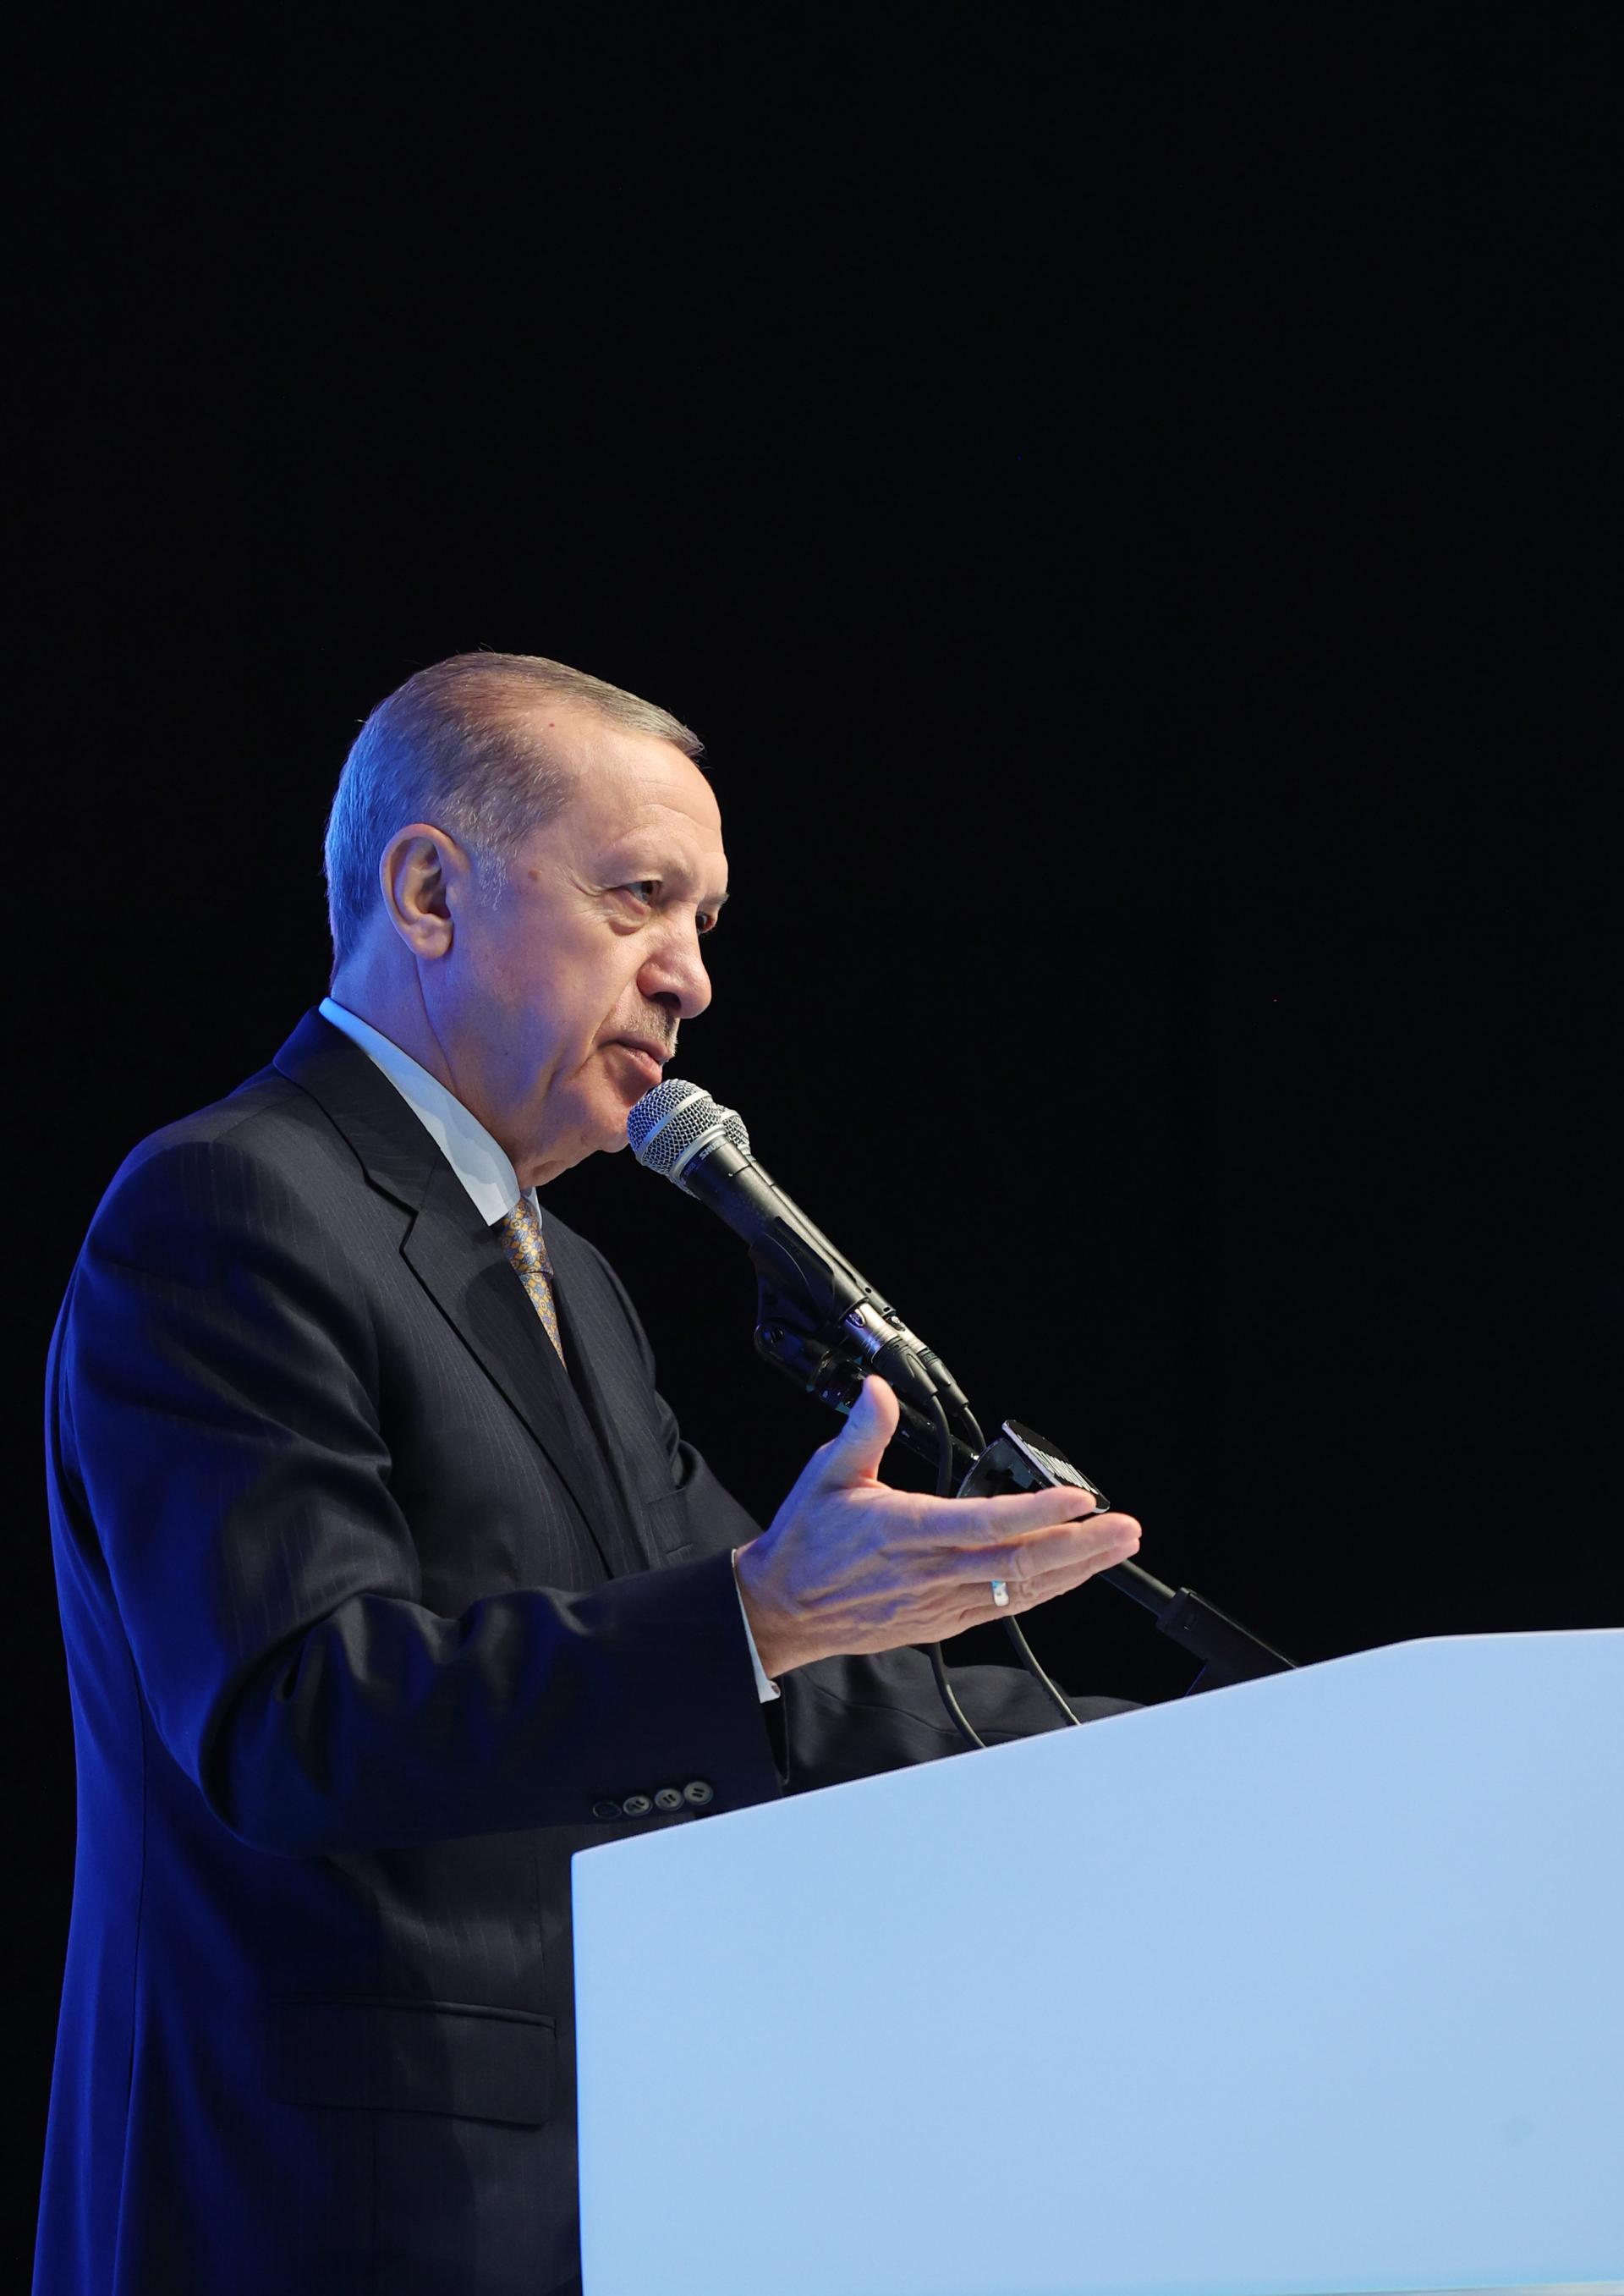 El presidente Erdogan reacciona con dureza a los que quedan silencio ante los ataques terroristas